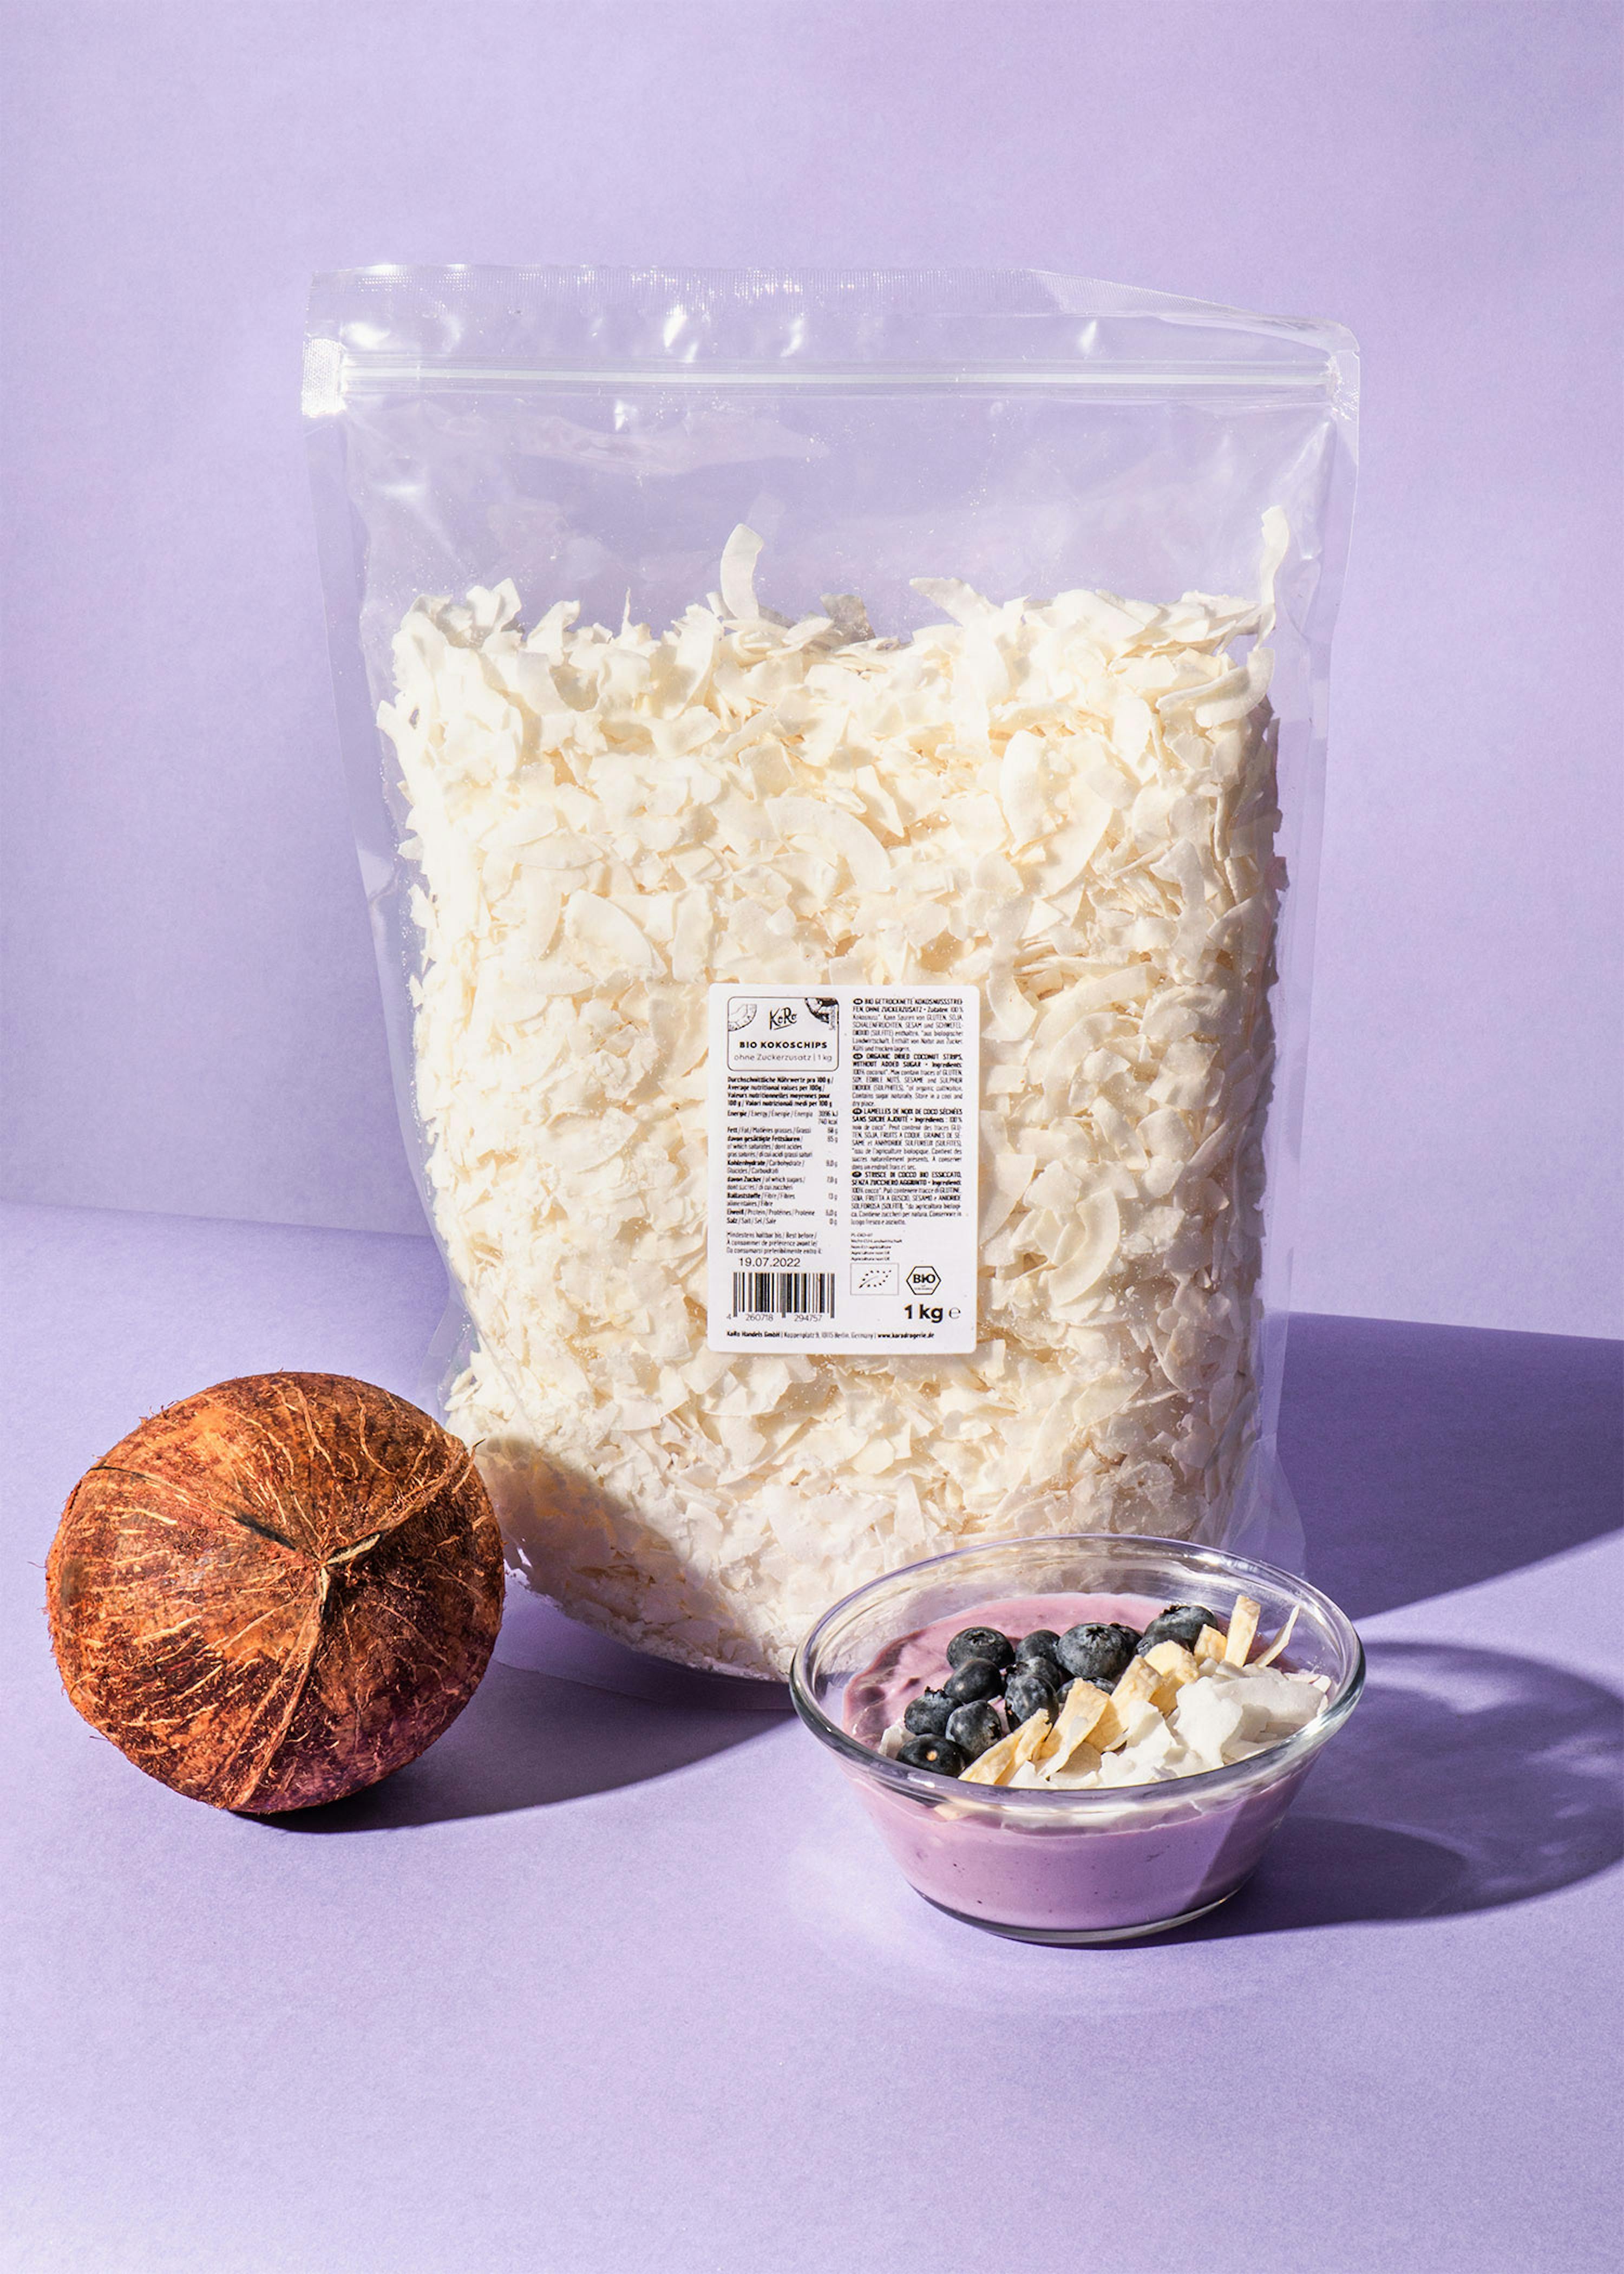 cel koepel hel Biologische veganistische kokoschips zonder toegevoegde suiker 1 kg kopen |  KoRo Nederland